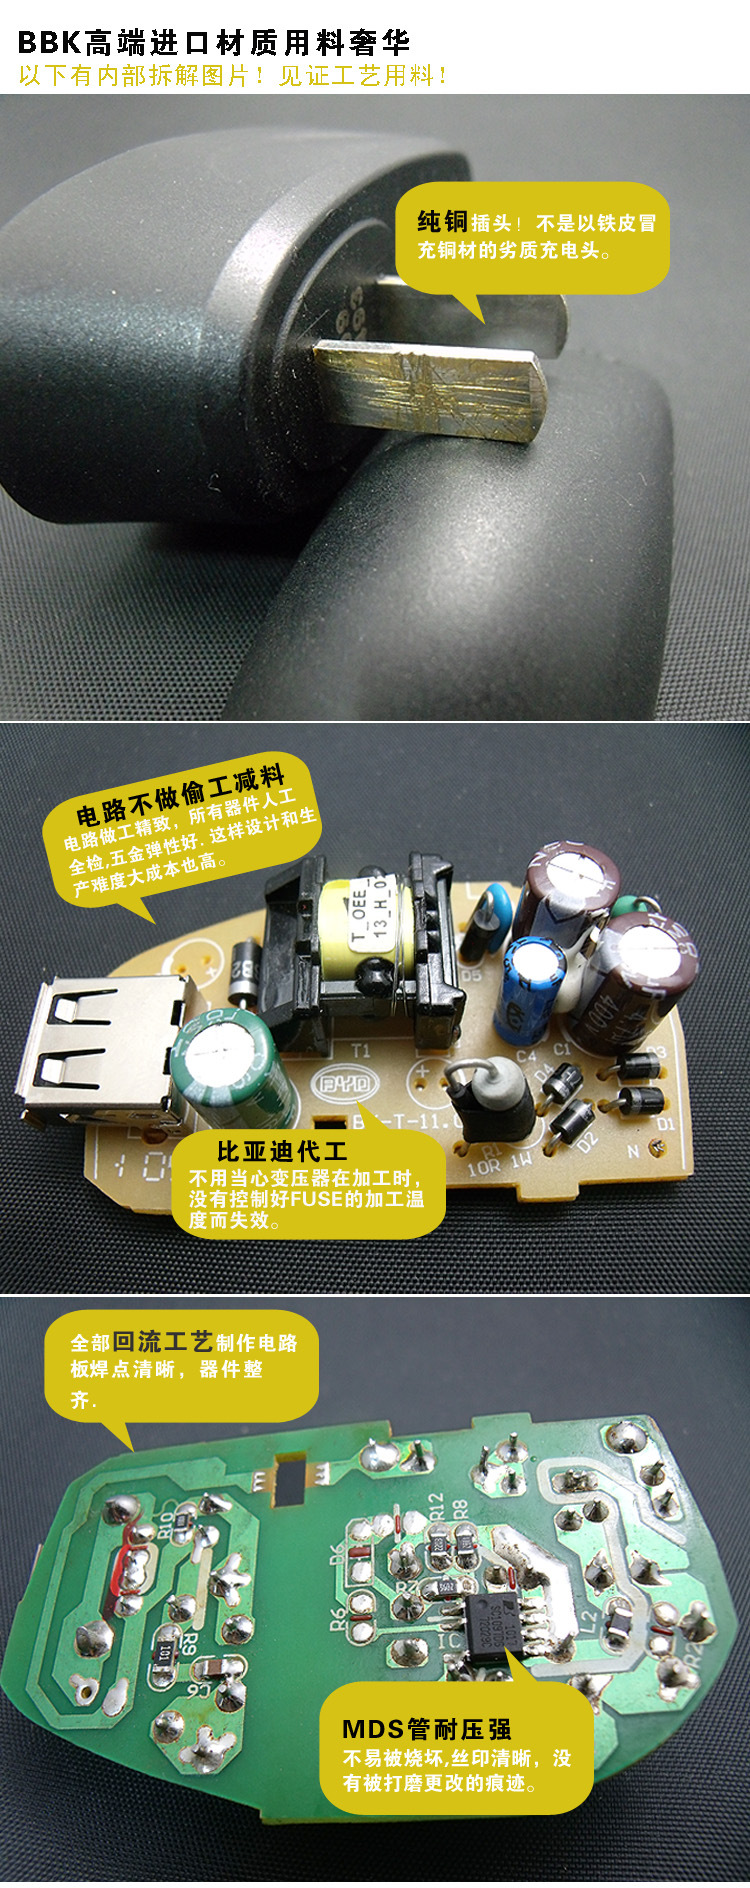 【步步高原装旅行充电器 BK-T-11 USB充电器